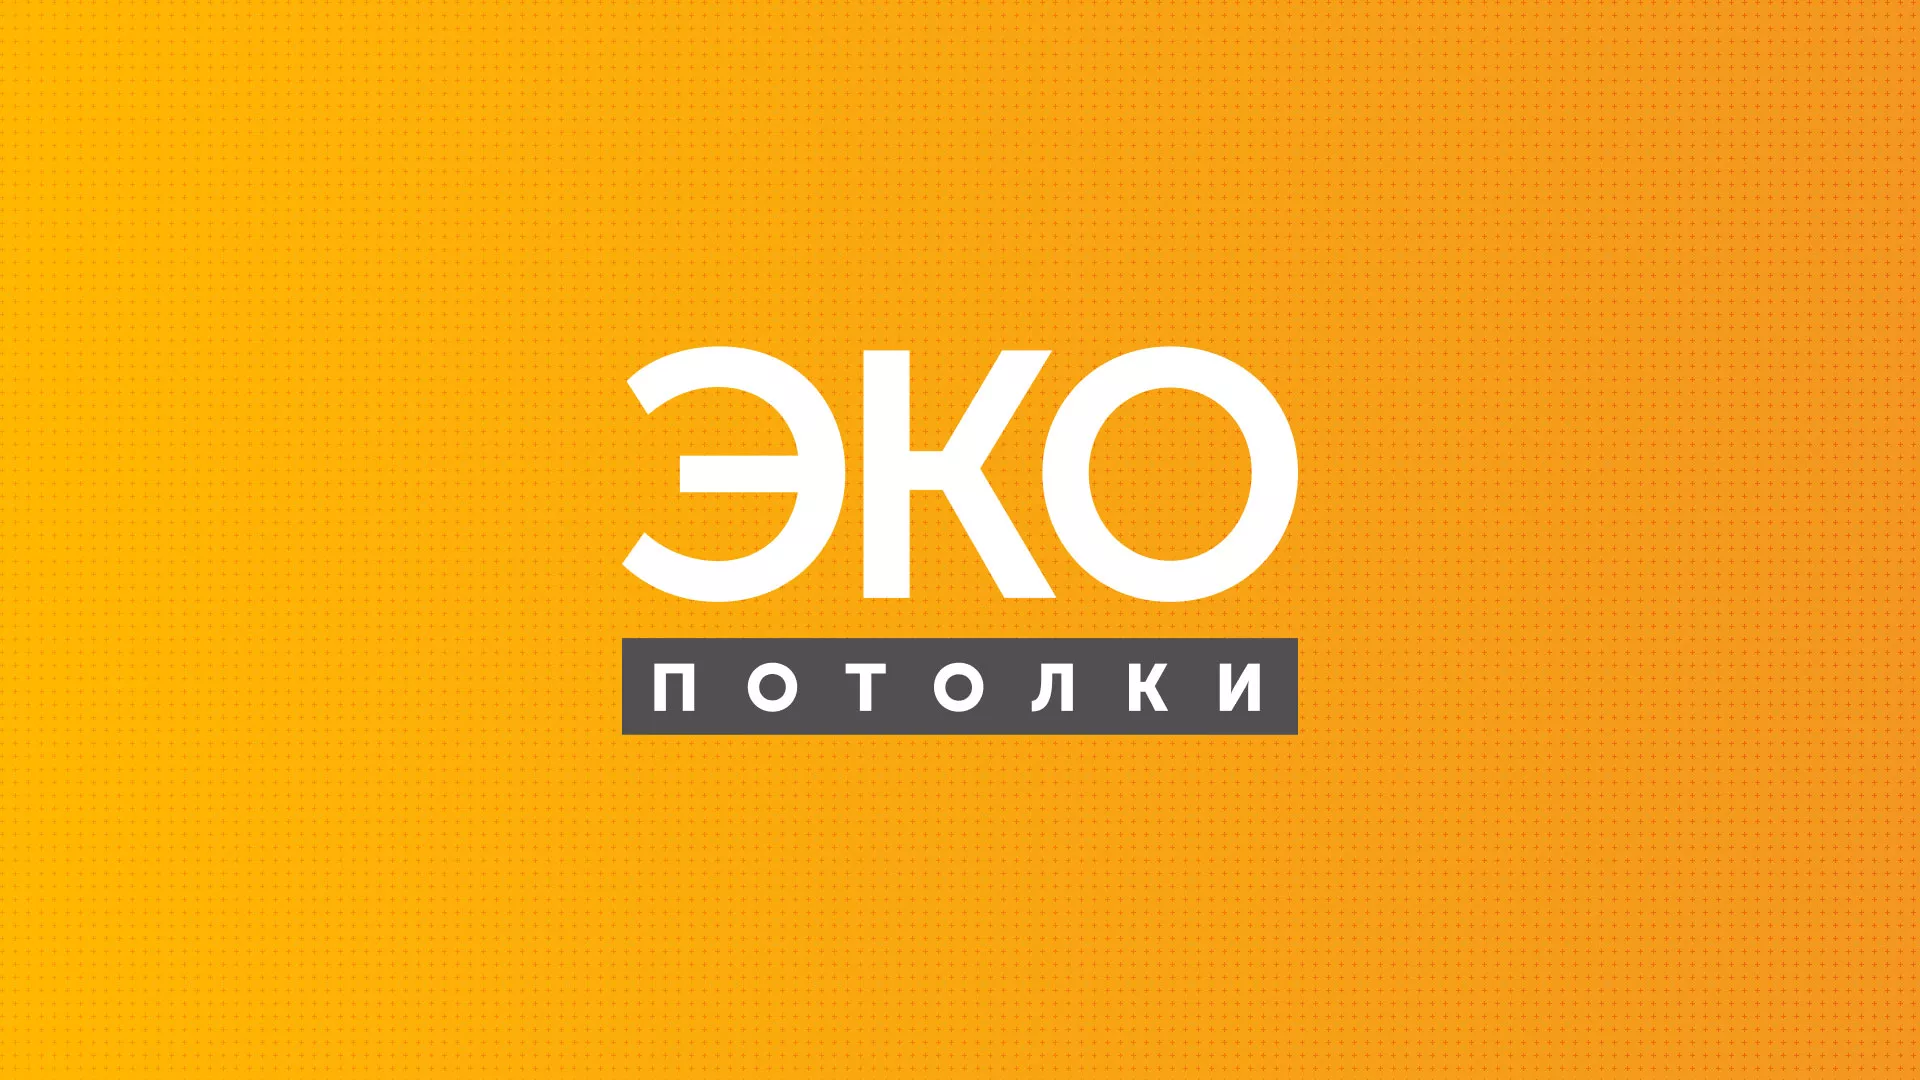 Разработка сайта по натяжным потолкам «Эко Потолки» в Калаче-на-Дону